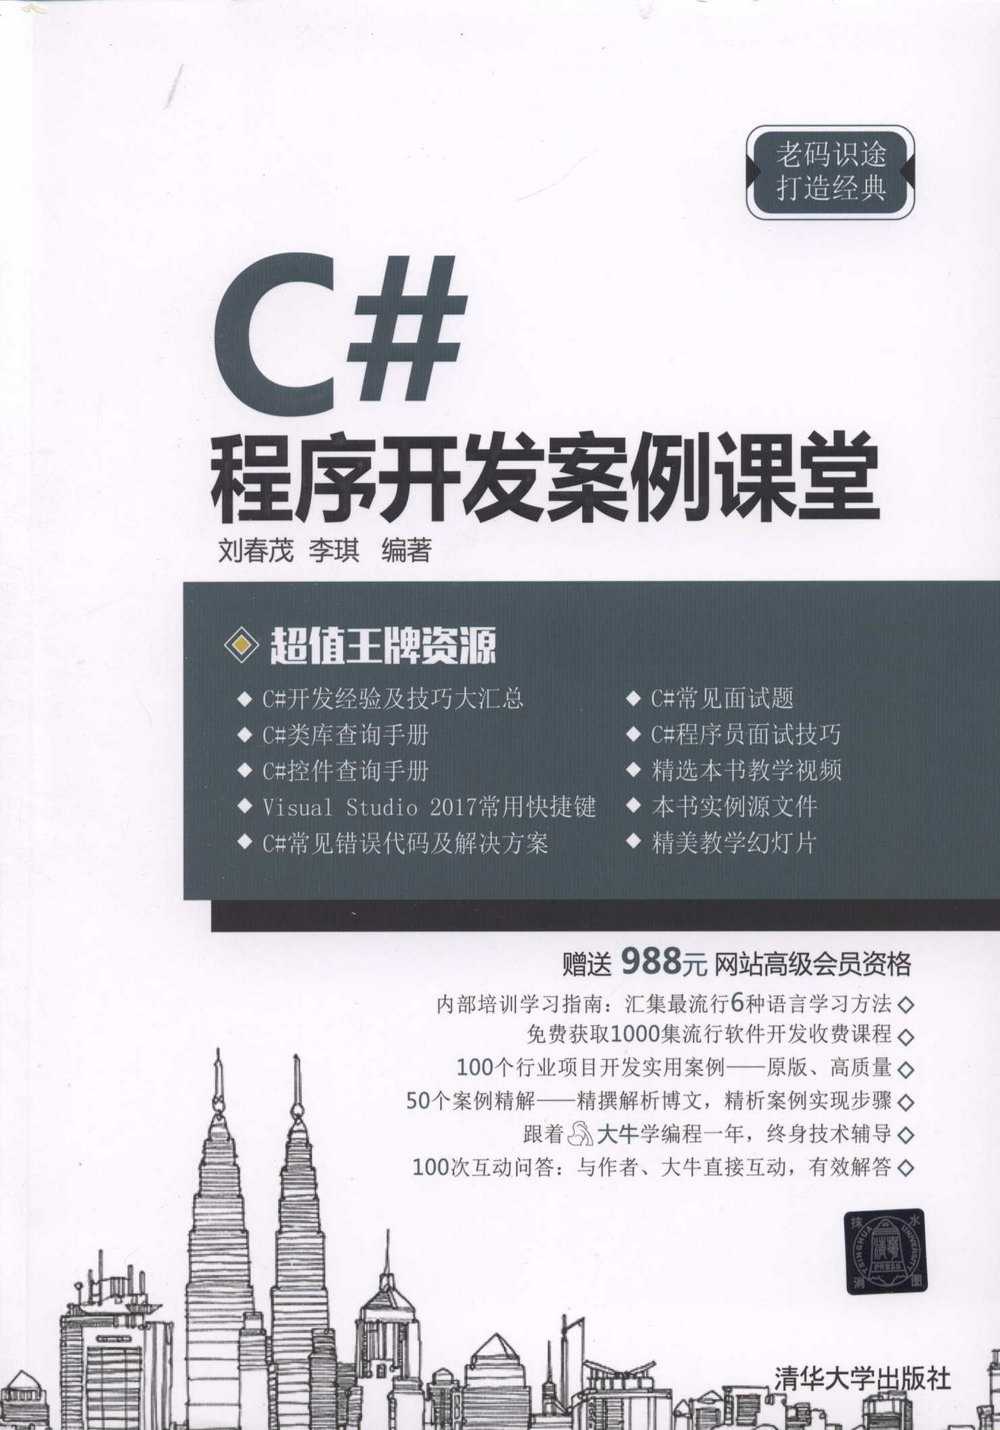 C#程序開發案例課堂